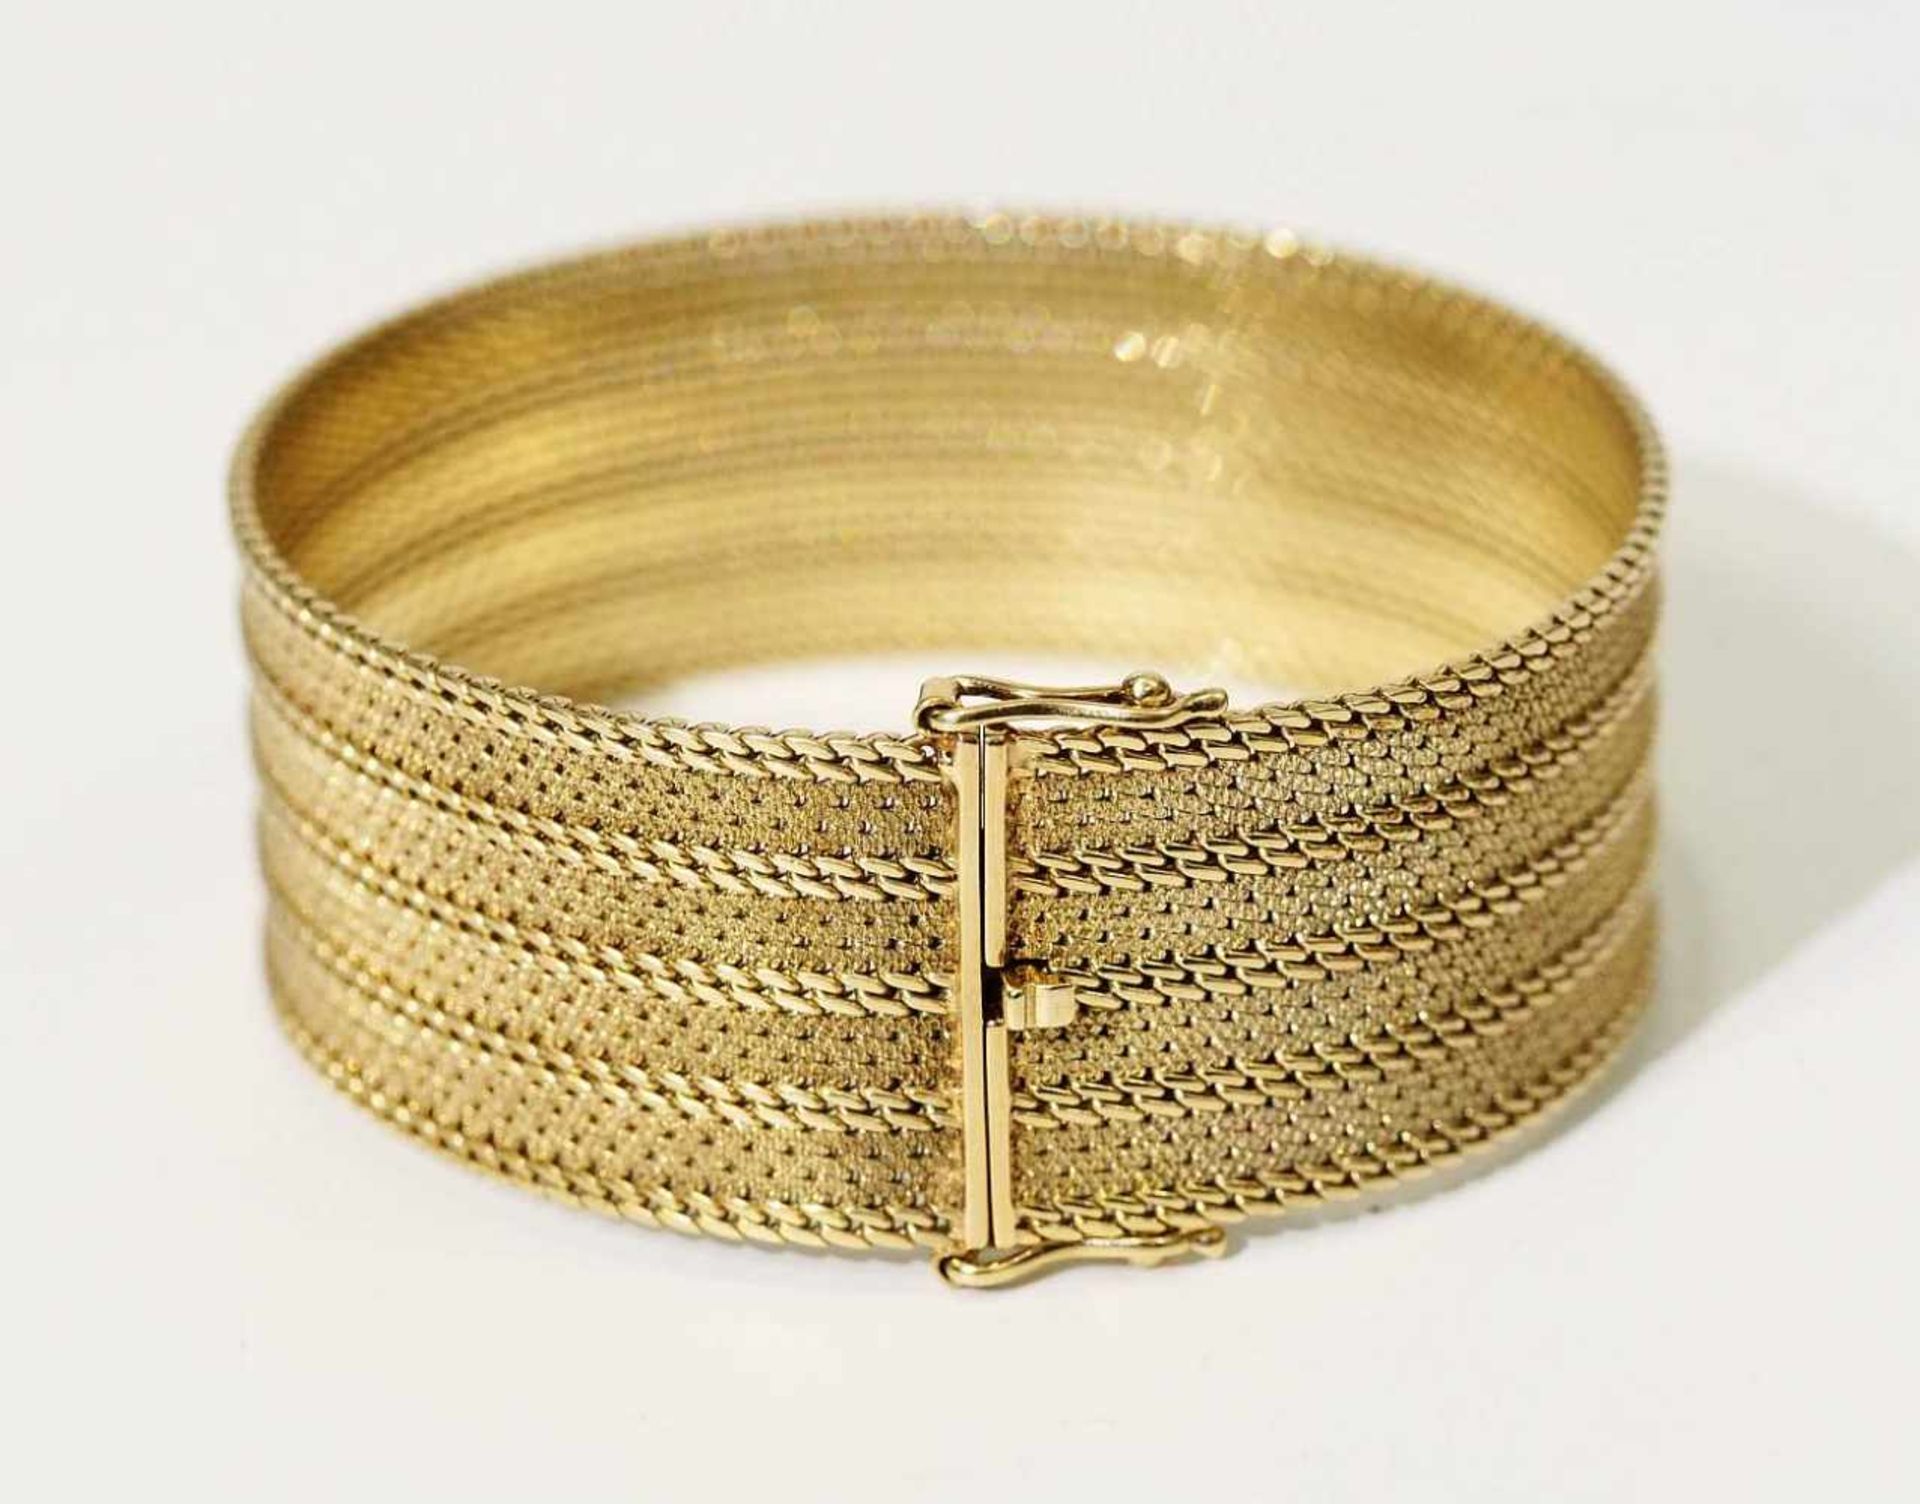 Armband.Armband. 585er Gelbgold punziert. Breites Armband mit ziselierten und polierten Reihen, - Image 3 of 5